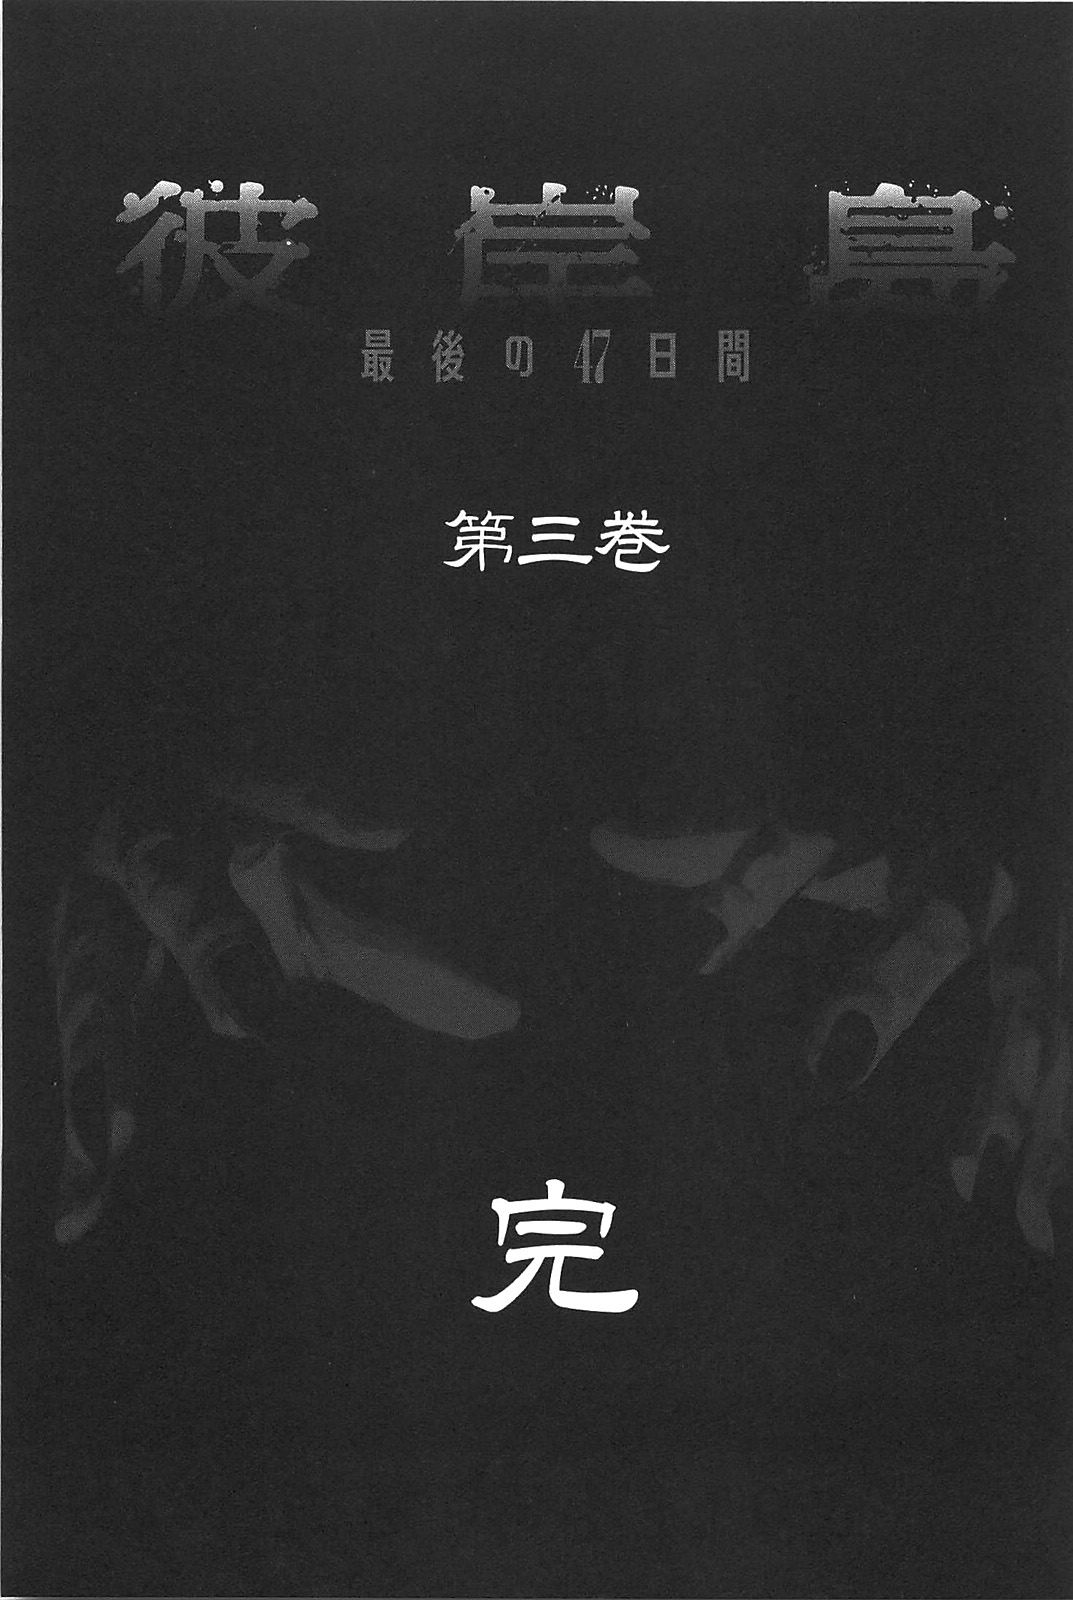 Higanjima Saigo no 47 Hiai Vol. 3 Ch. 29 Darkness